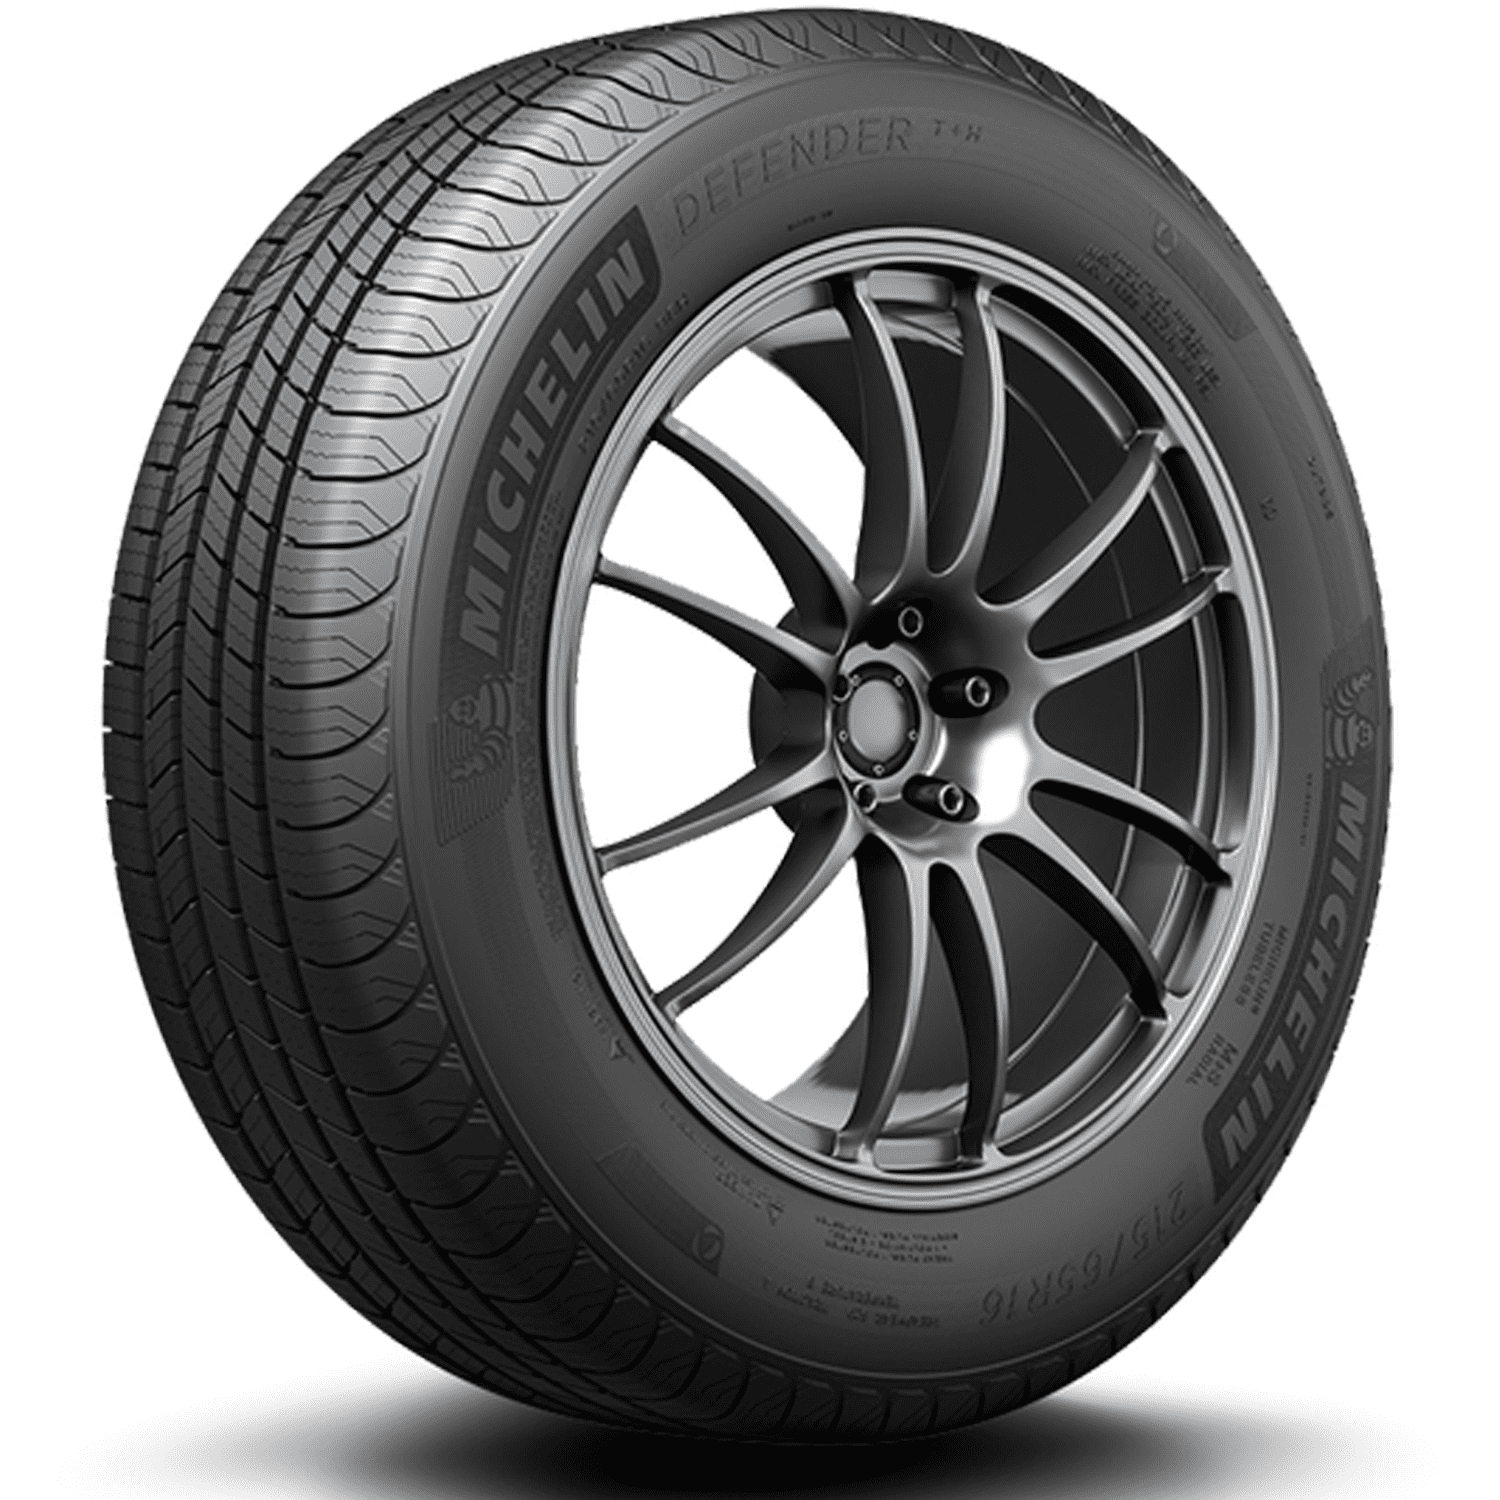 Michelin Defender T + H All-Season 205/60R16 92H Tire